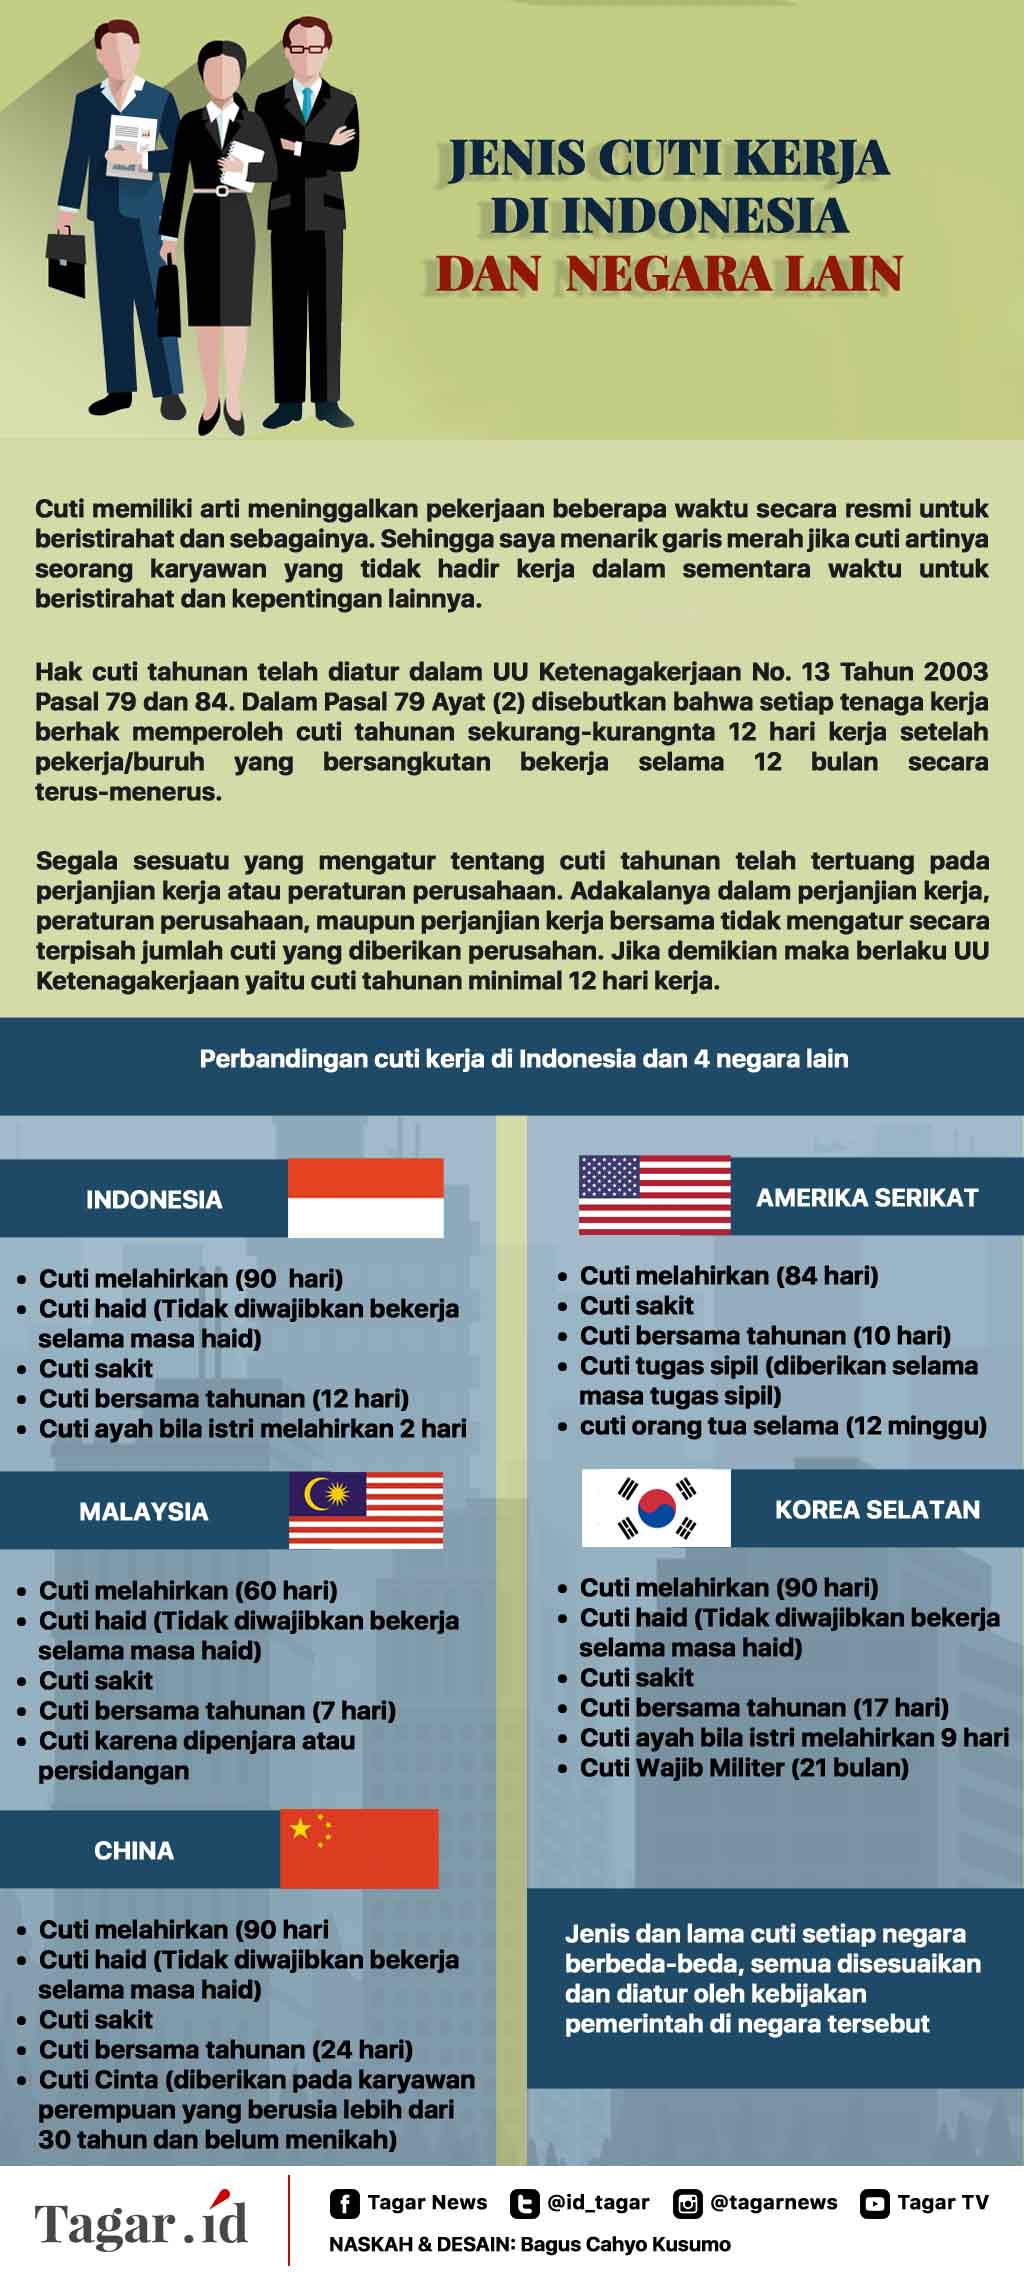 Infografis; Jenis Cuti Kerja di Indonesia dan Negara Lain